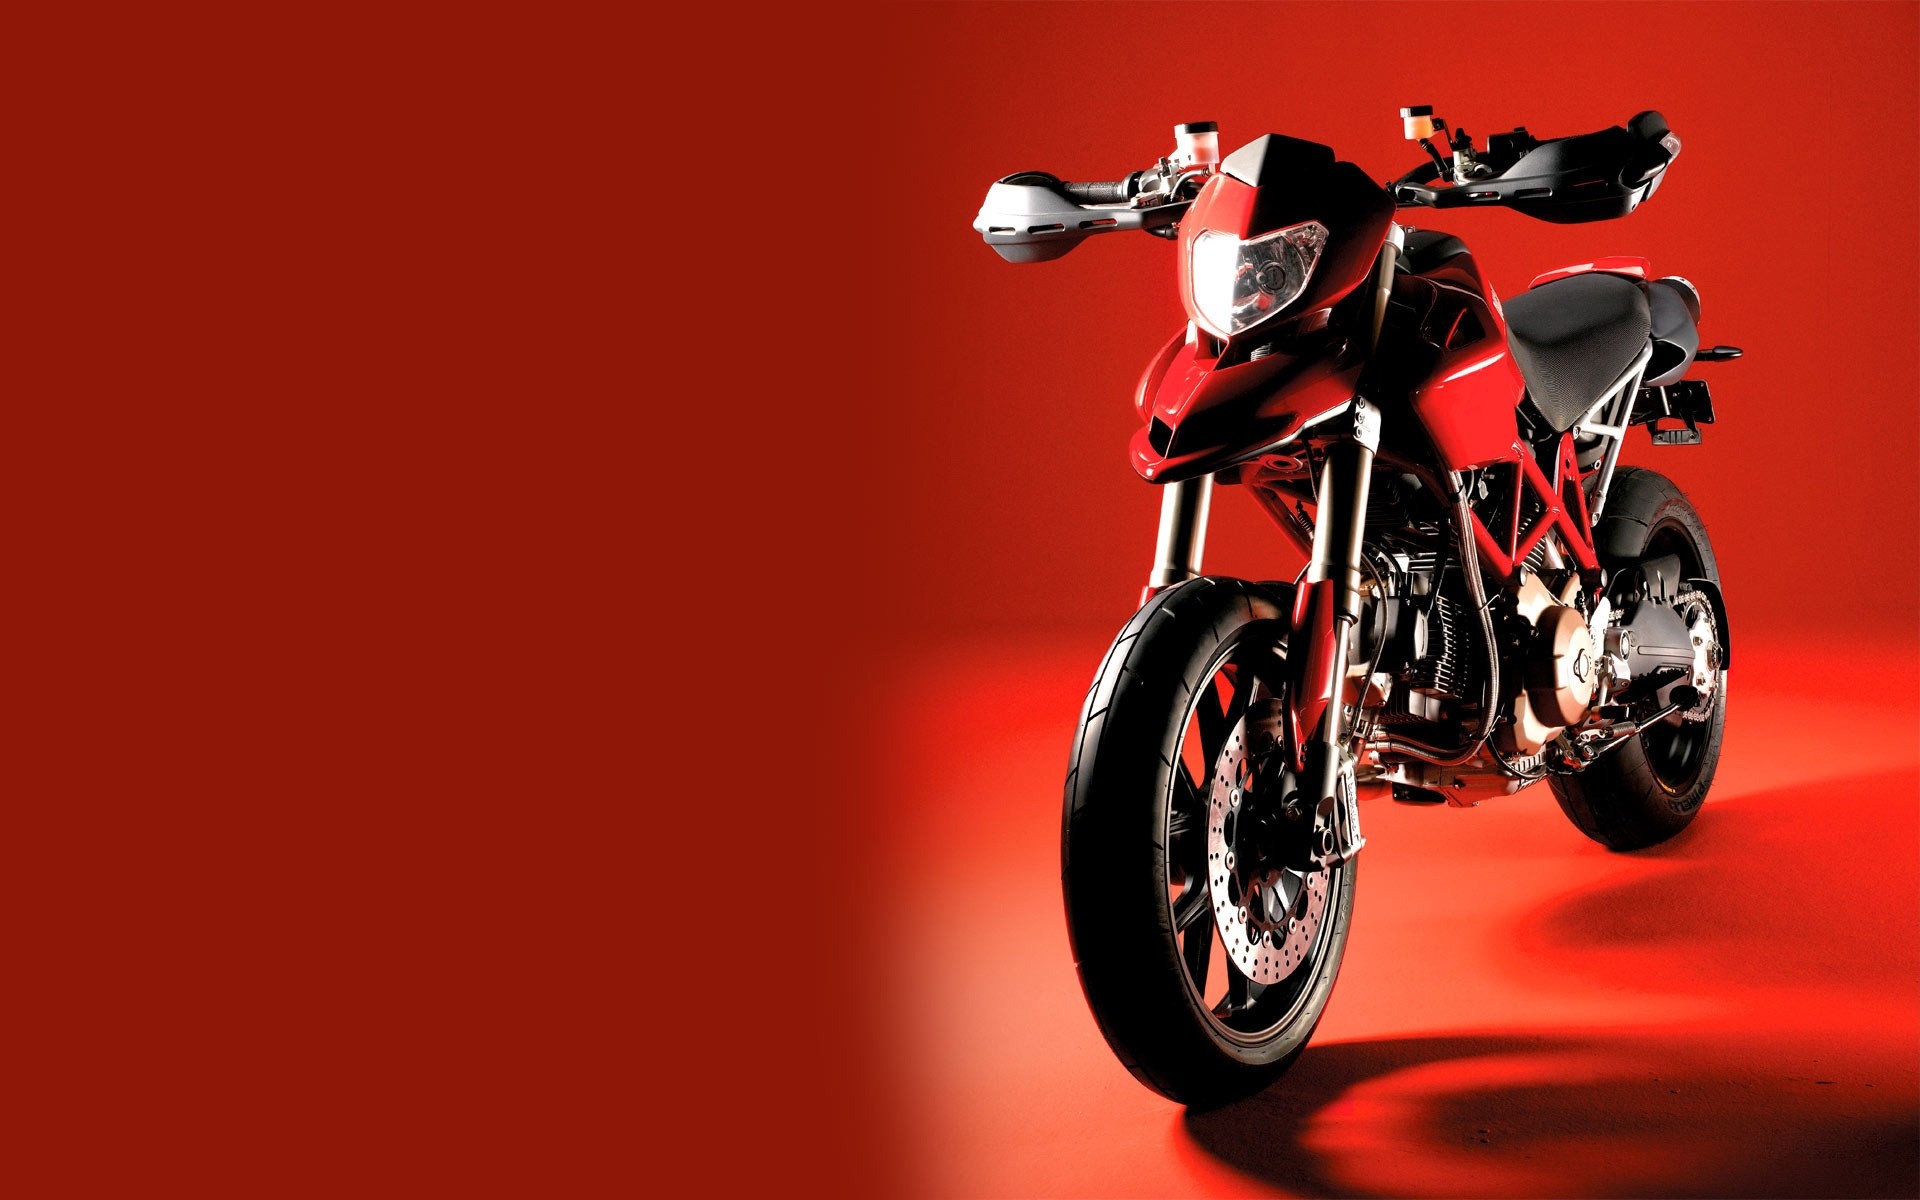 красный мотоцикл Ducati без смс